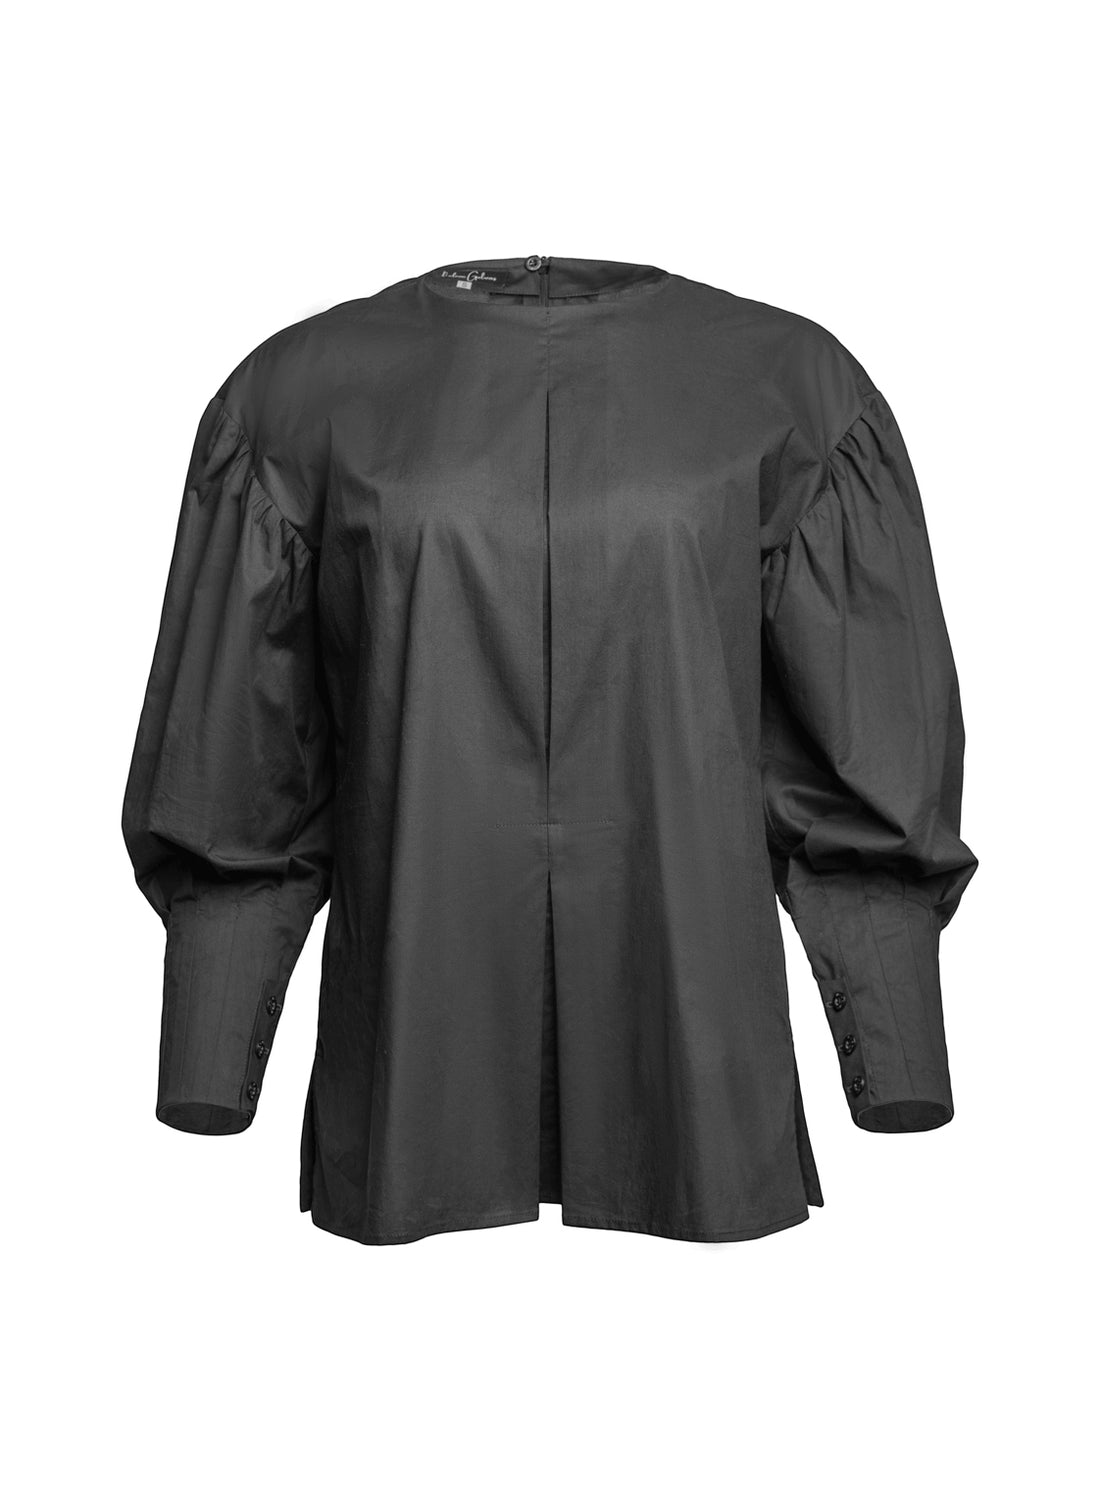 Außergewöhnliche, schwarze Basic Bluse aus 100% Baumwolle mit Rundhalsausschnitt, Kellerfalte mittig und seitlichen Schlitzen